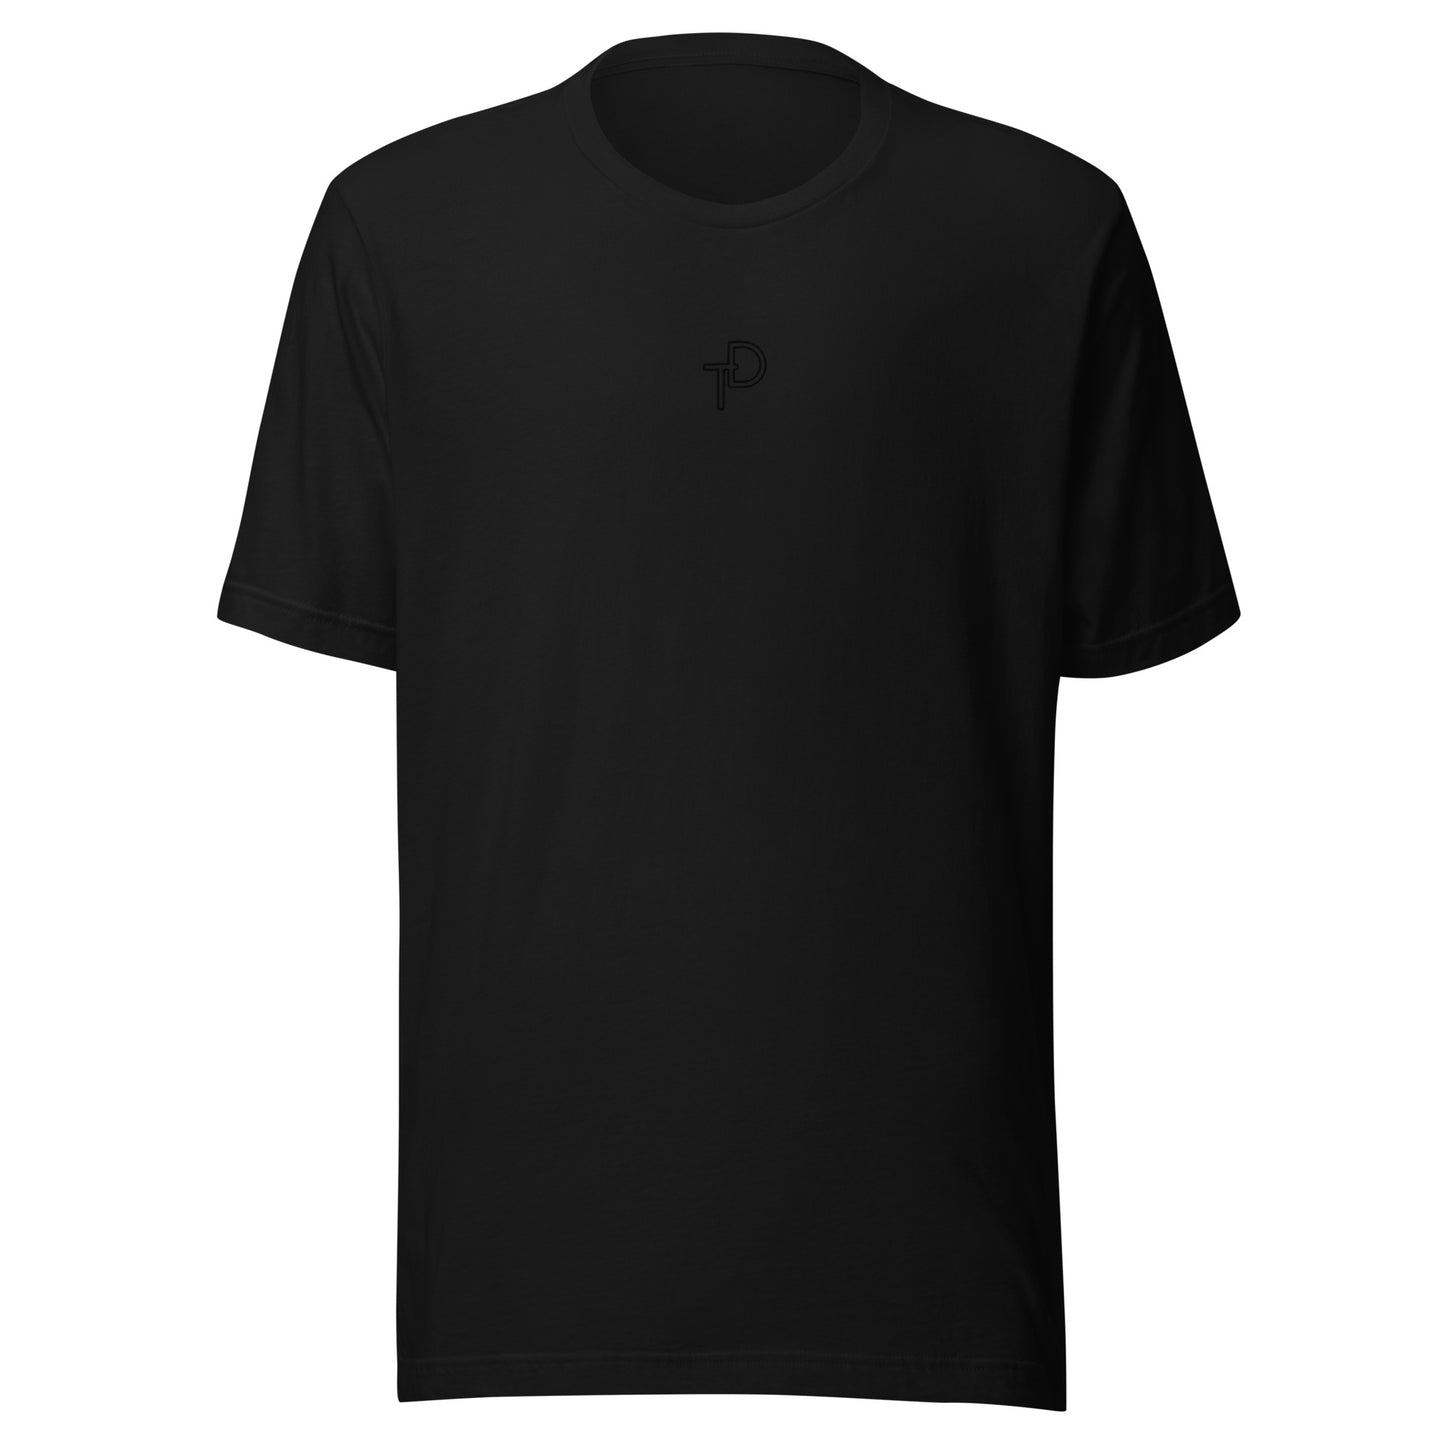 T-shirt Black "TD" Logo